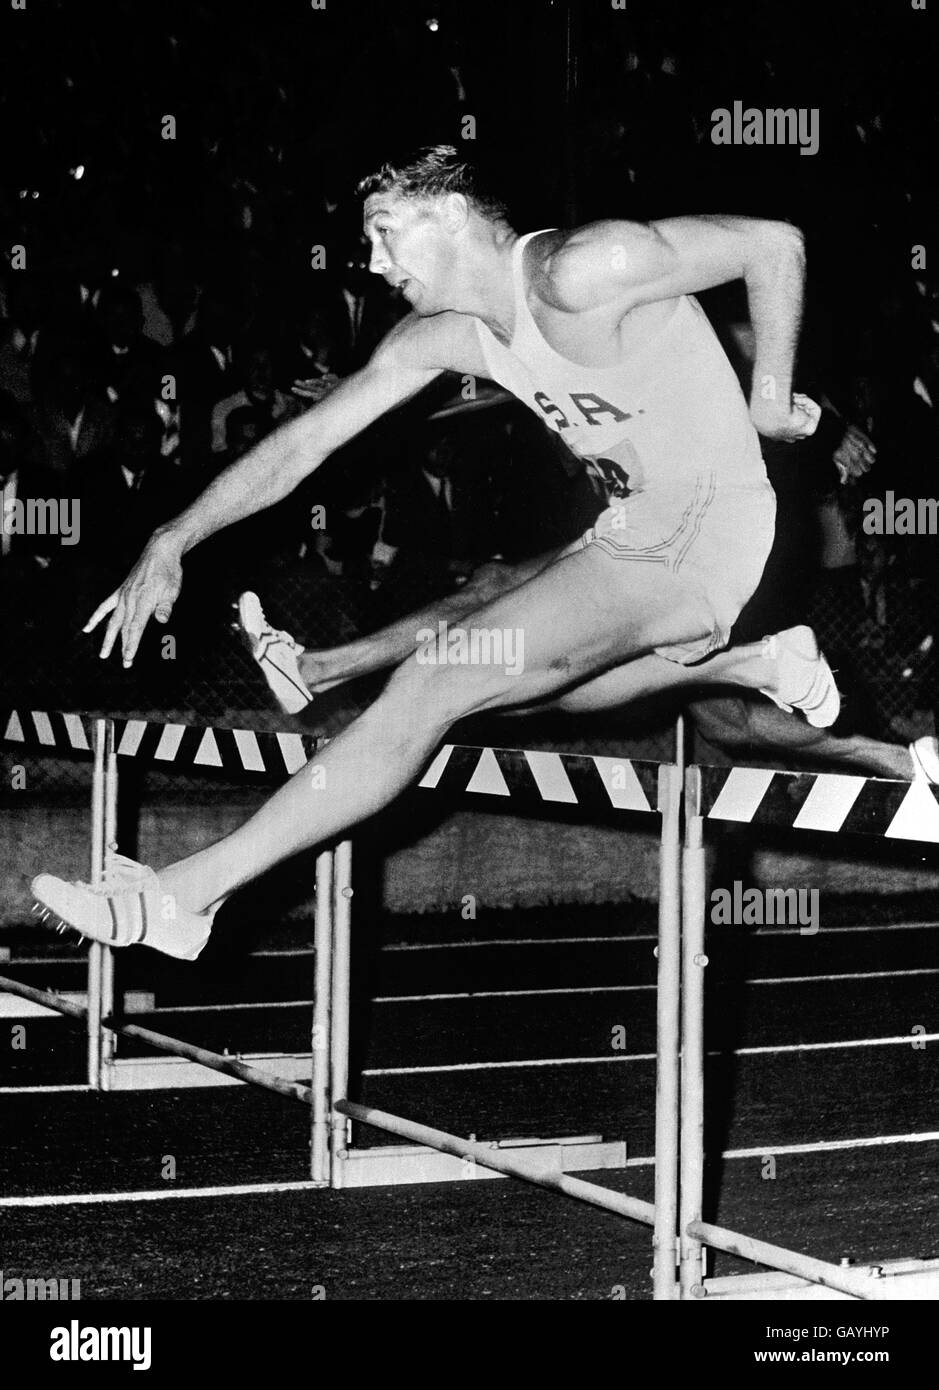 Atletica. Glenn Davis, USA (medaglia d'oro olimpica di 400 m Hurdles nel 1956 e nel 1960) Foto Stock